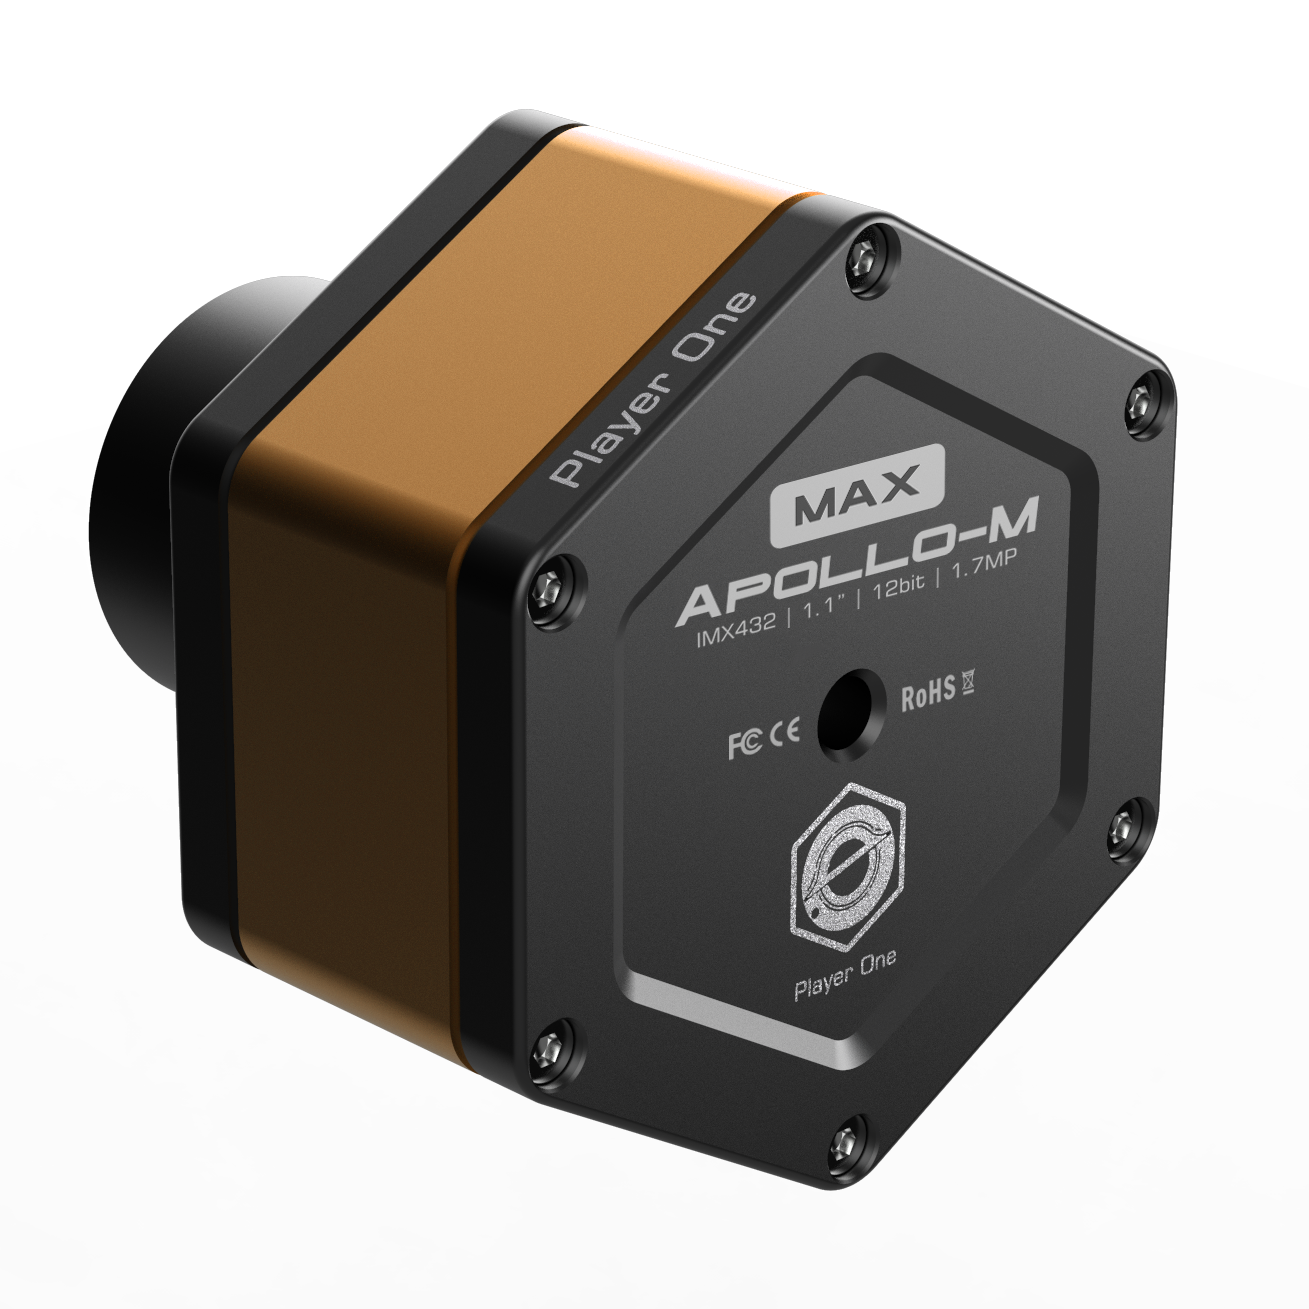  Camera  Apollo M-Max Mono   Player One  IMX432 per riprese solari di altissima qualità   